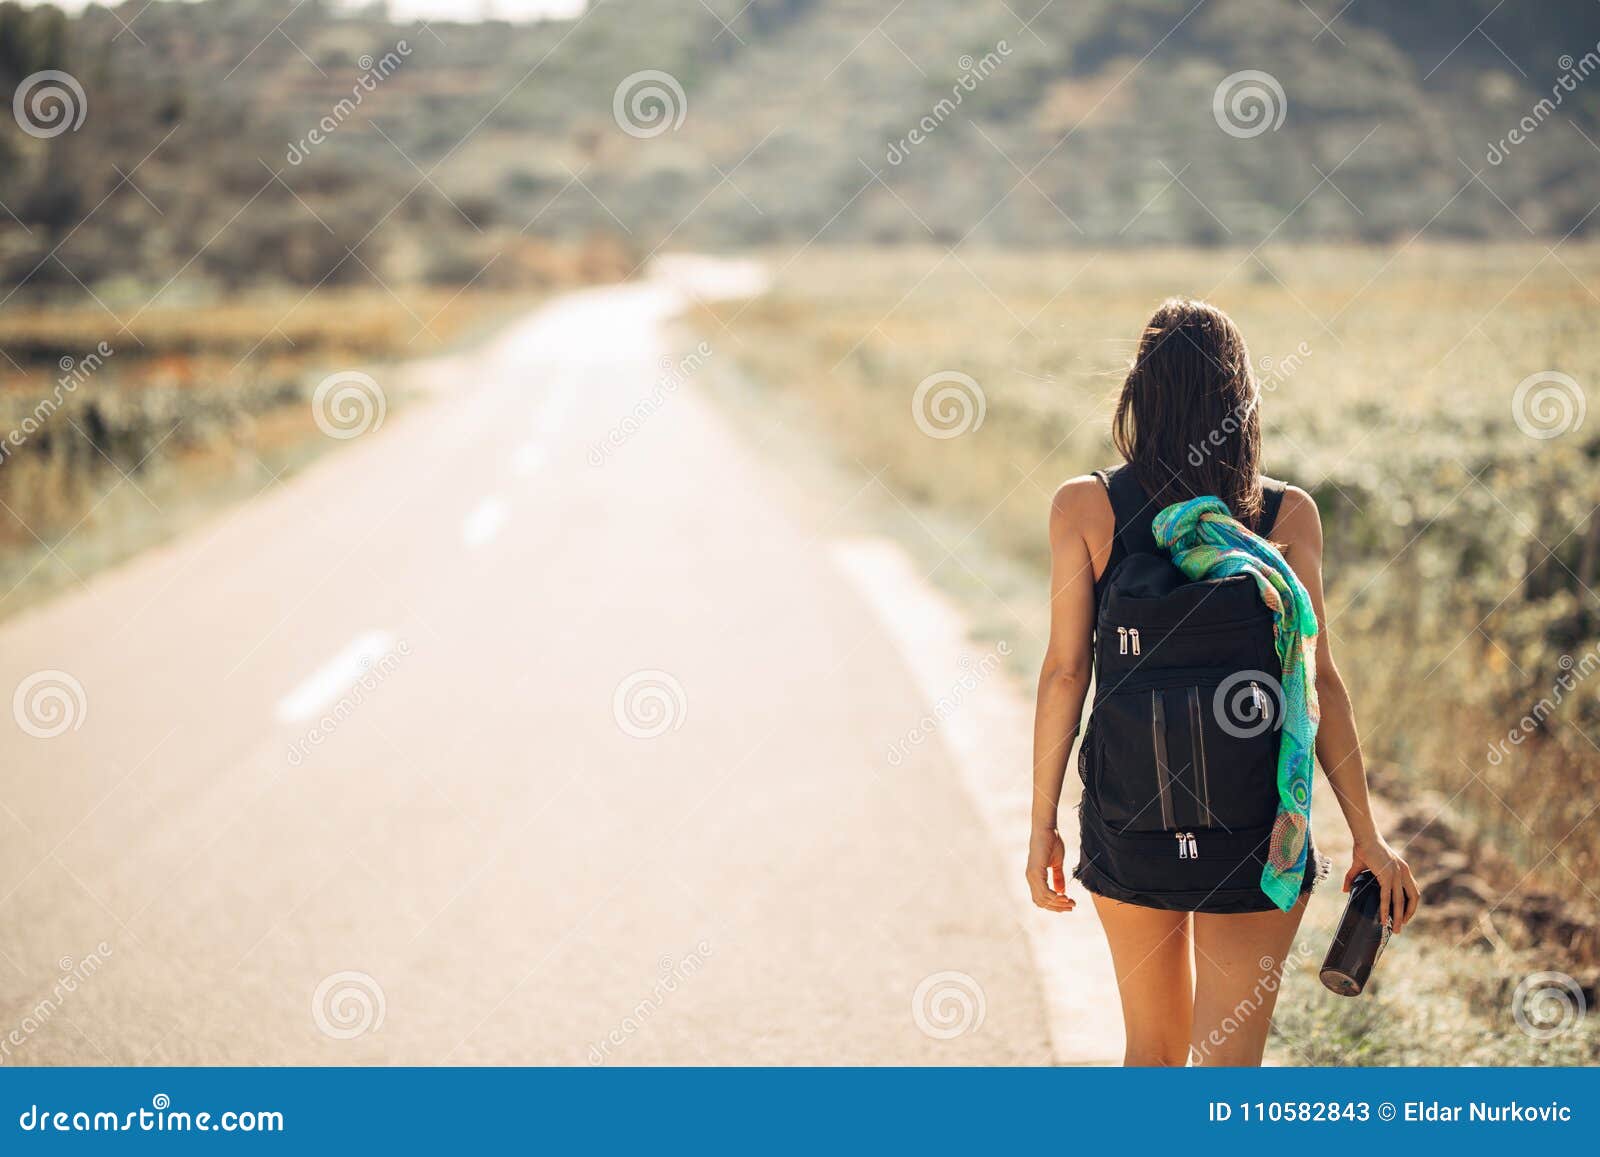 Potomstwa backpacking awanturniczej kobiety hitchhiking na drodze Podróżna plecak pojemność, pakuje podstawy Podróż styl życia Niski budżeta podróżować Awanturniczy aktywnych wakacje Hitchhiking turystyki pojęcie